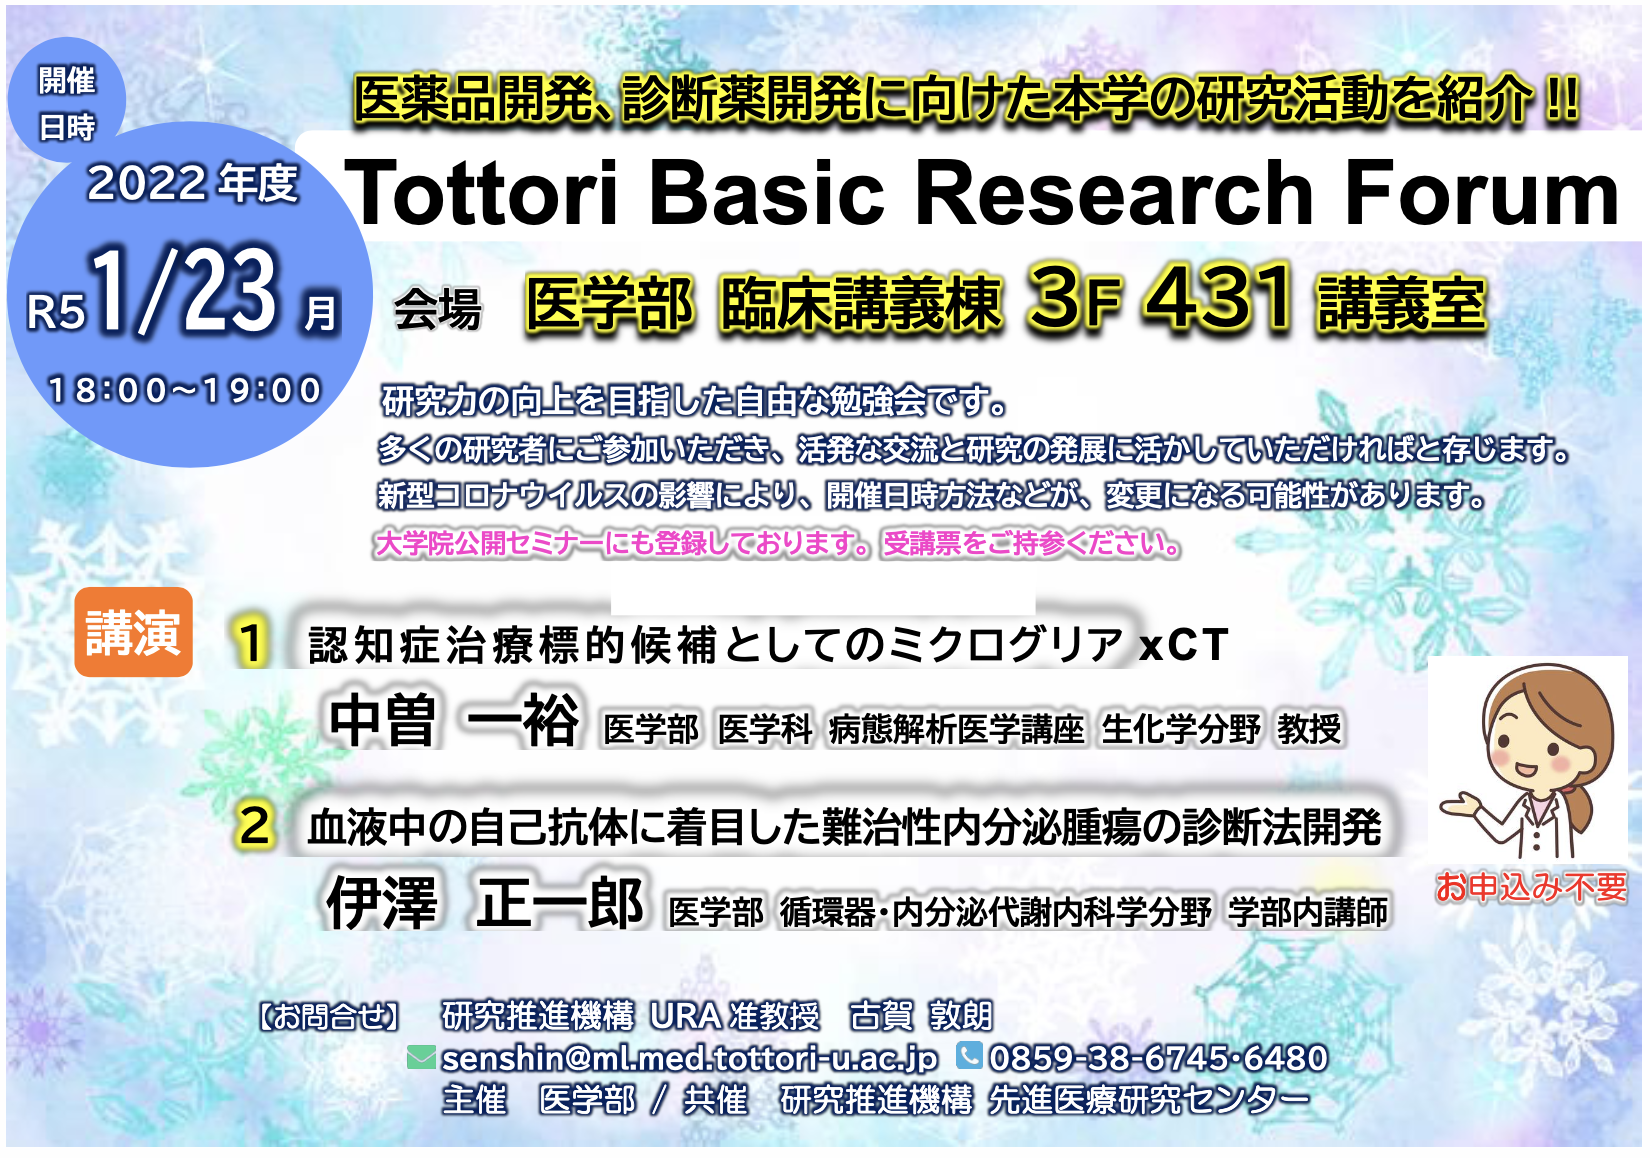 Tottori Basic Research Forum で 研究紹介を行いました （中曽）